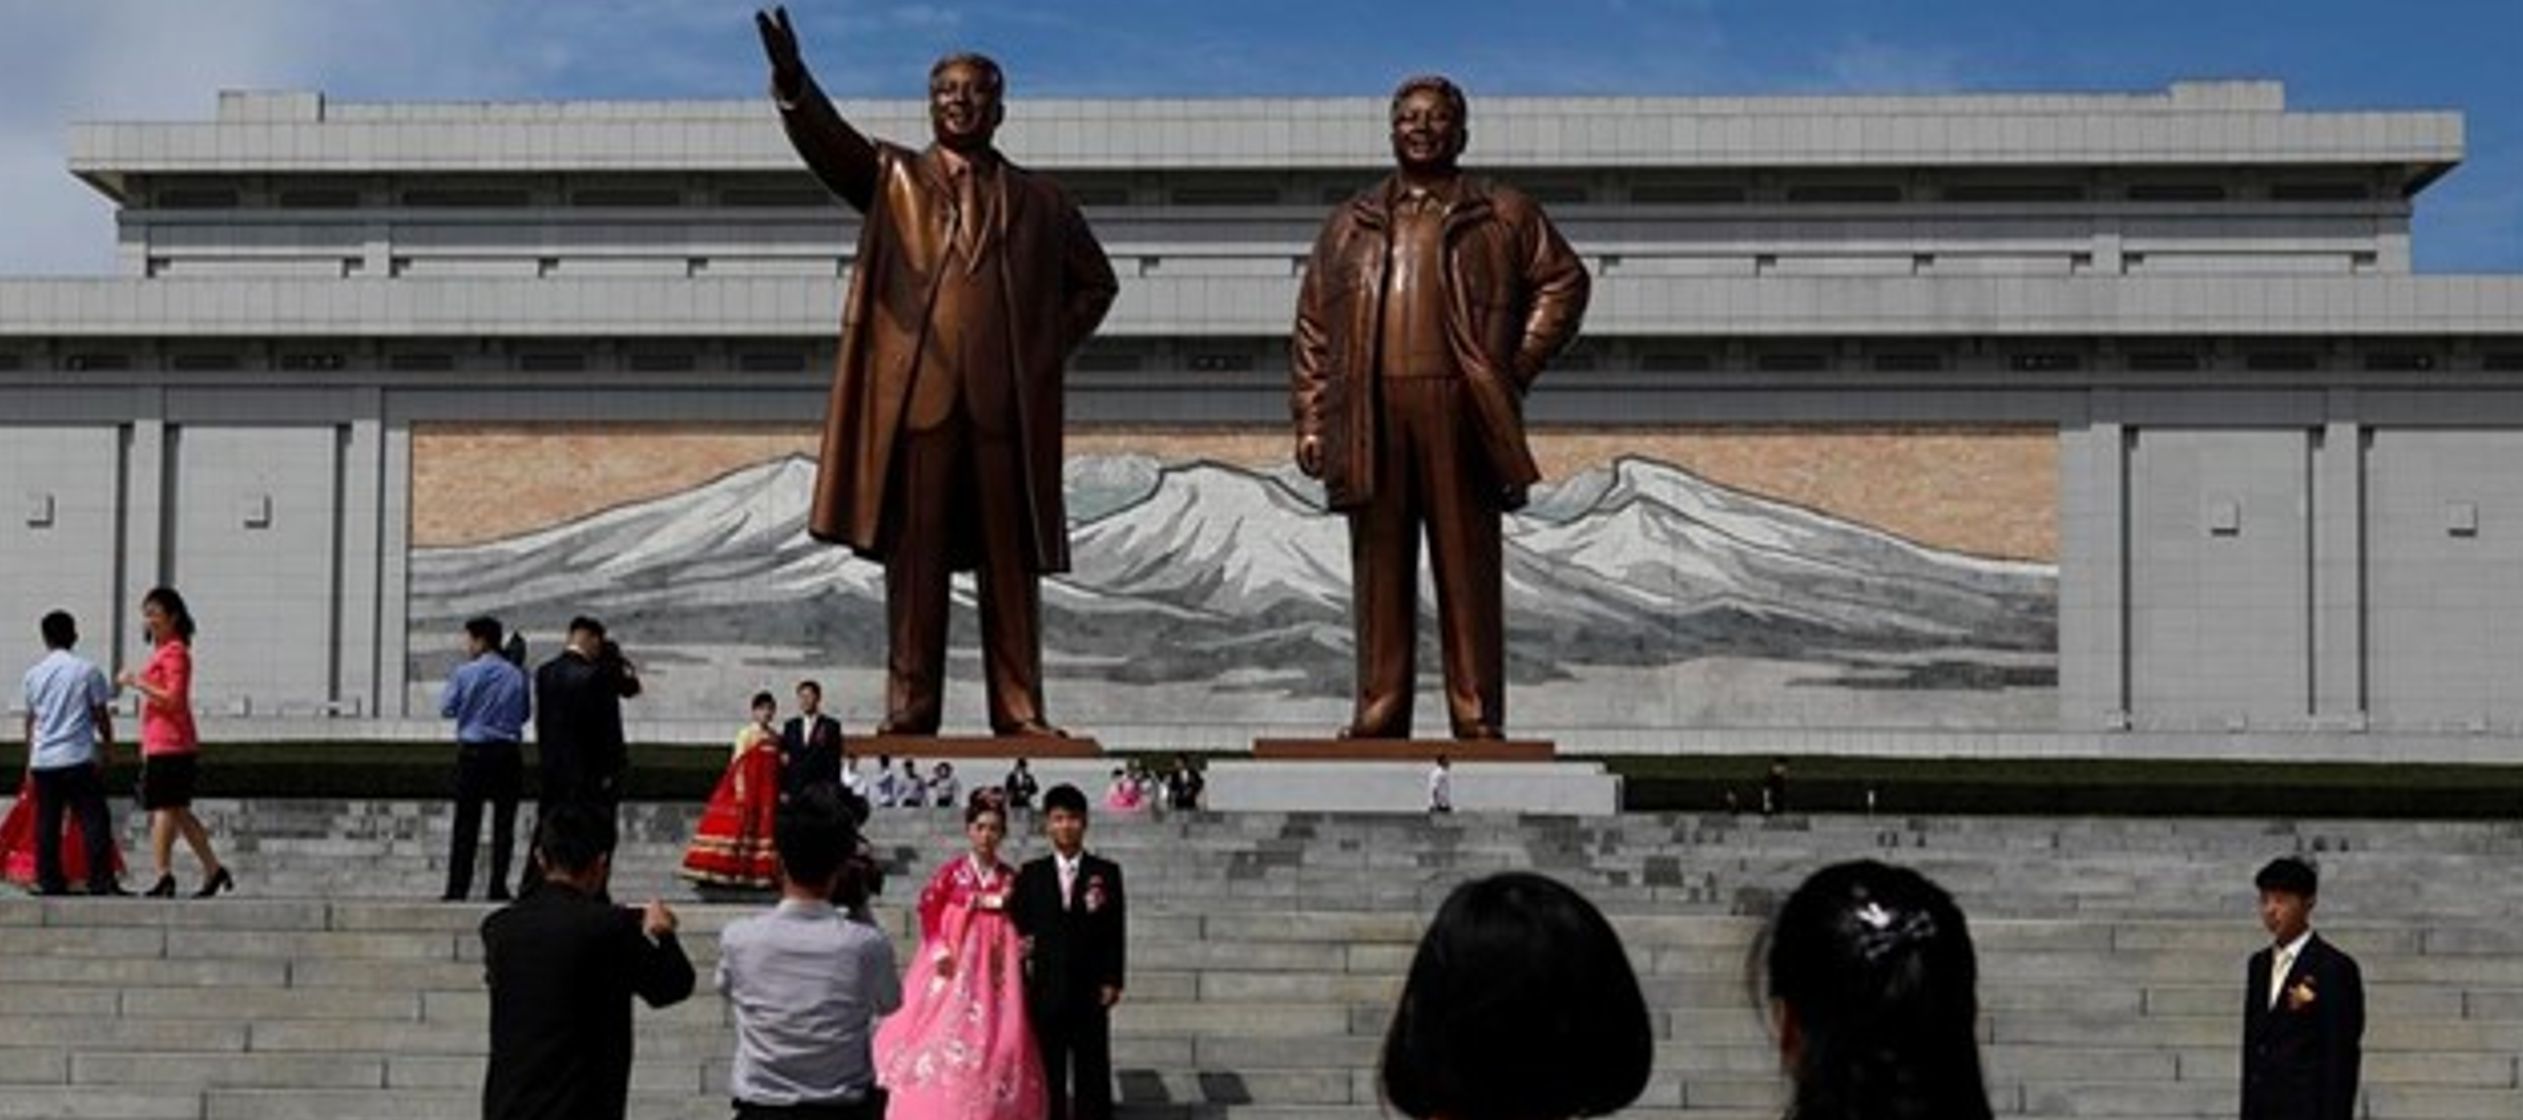 Los norcoreanos están obligados a trabajar, pero no son ellos quienes eligen su empleo, sino...